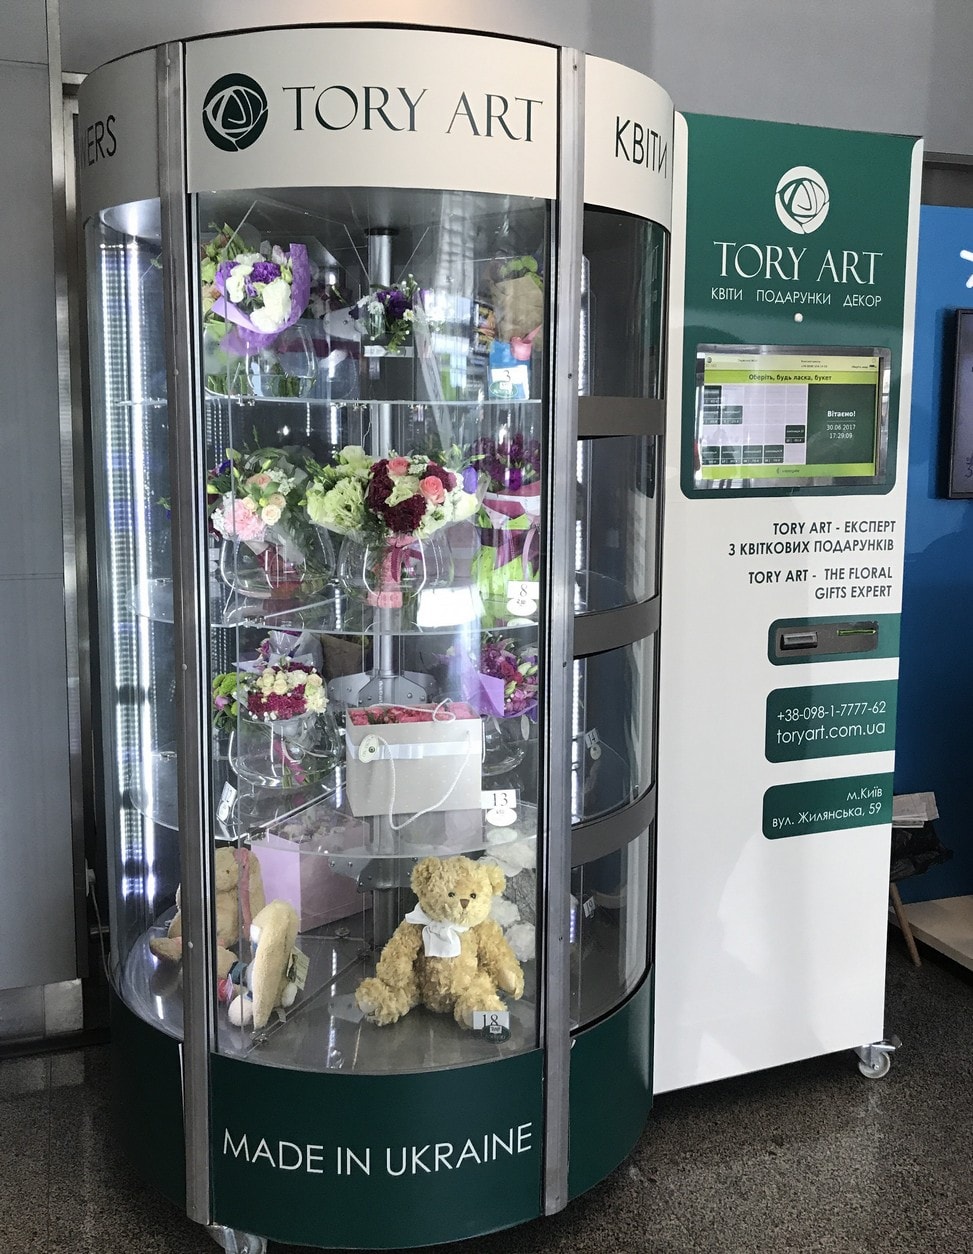 Фломат - автомат по продаже цветов в аэропорту Борисполь